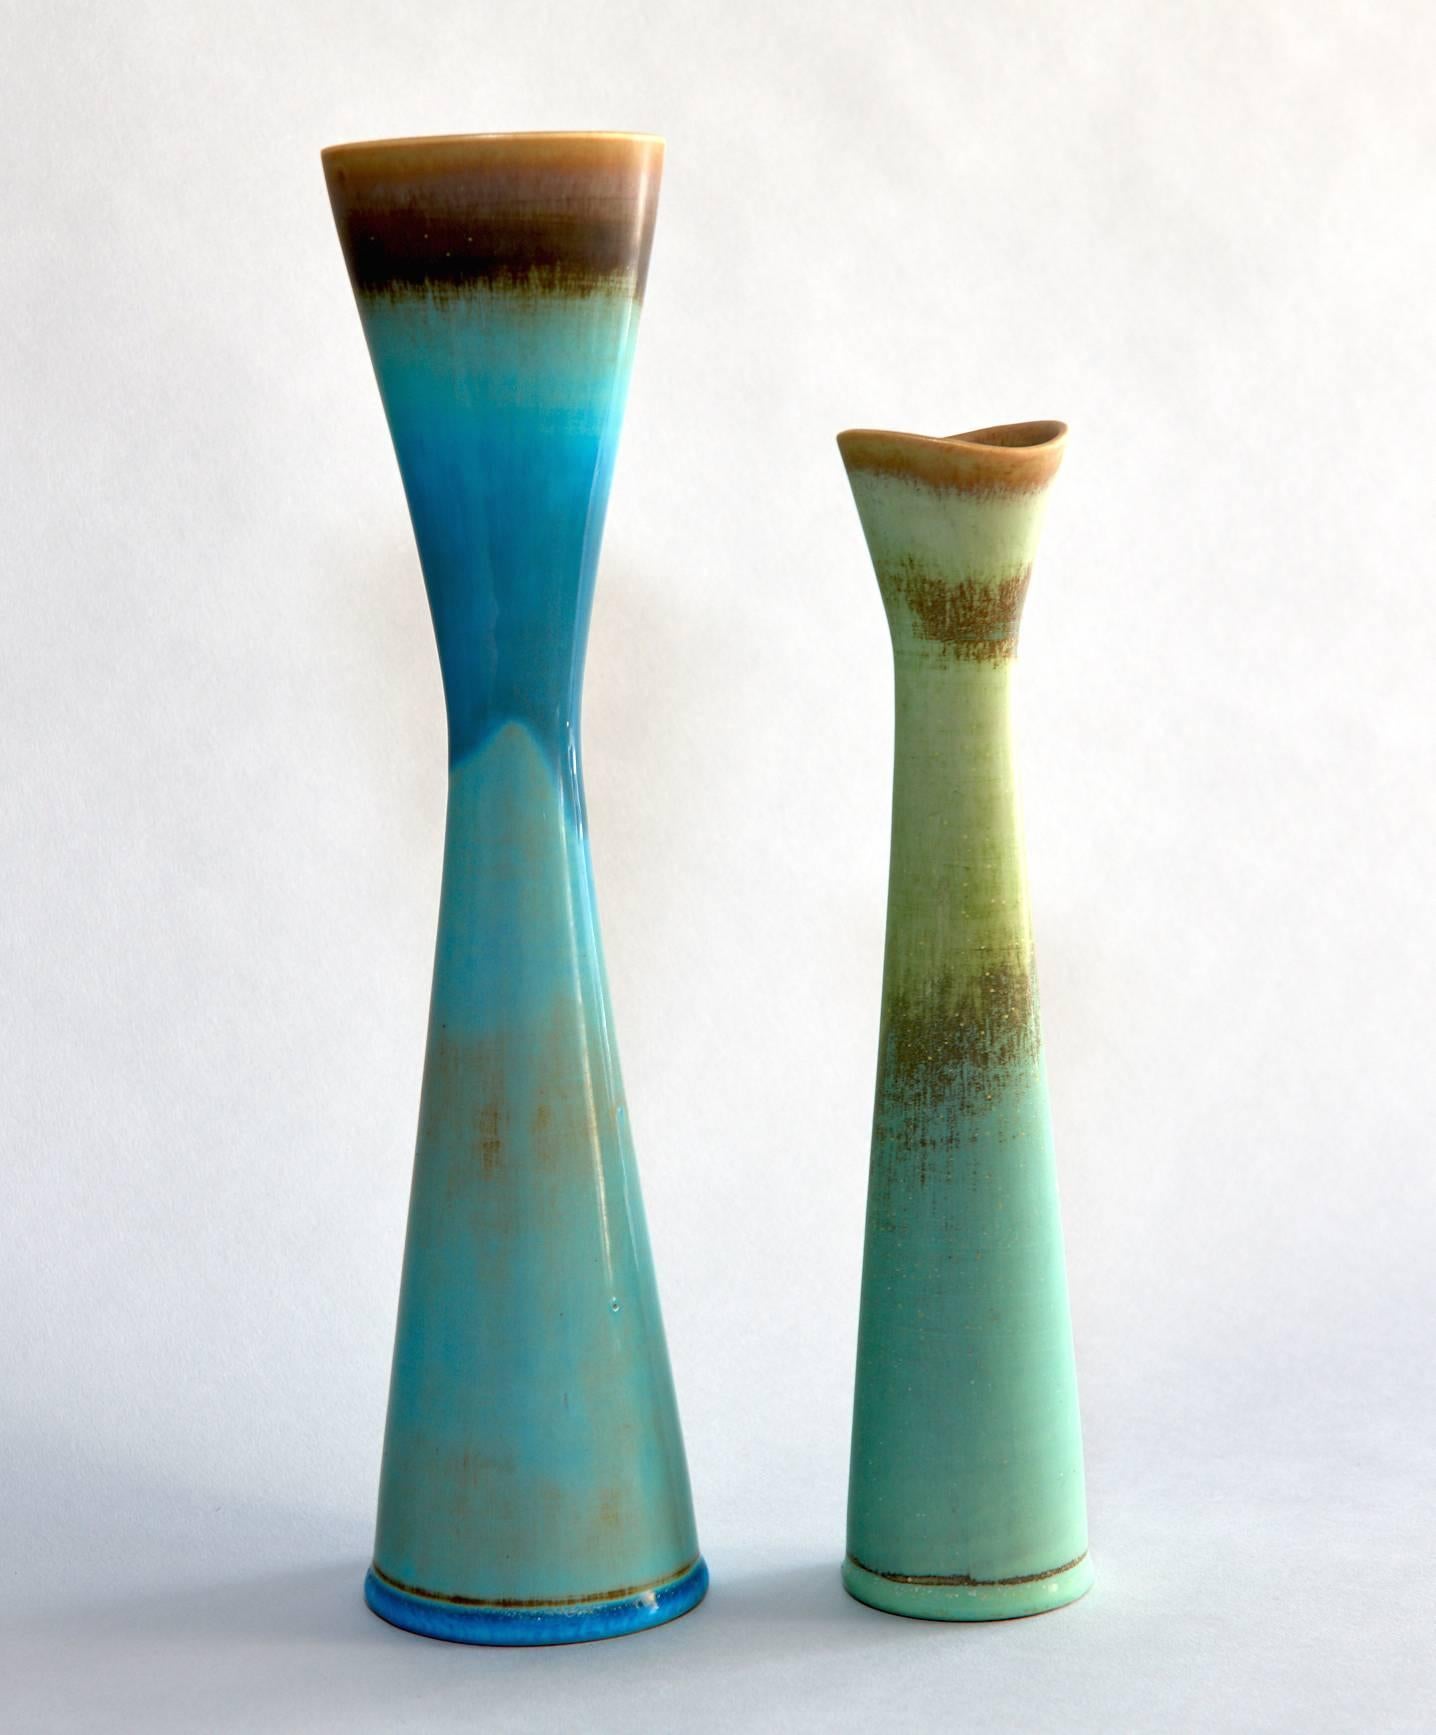 Six Studio Vases by Stig Lindberg (20. Jahrhundert)